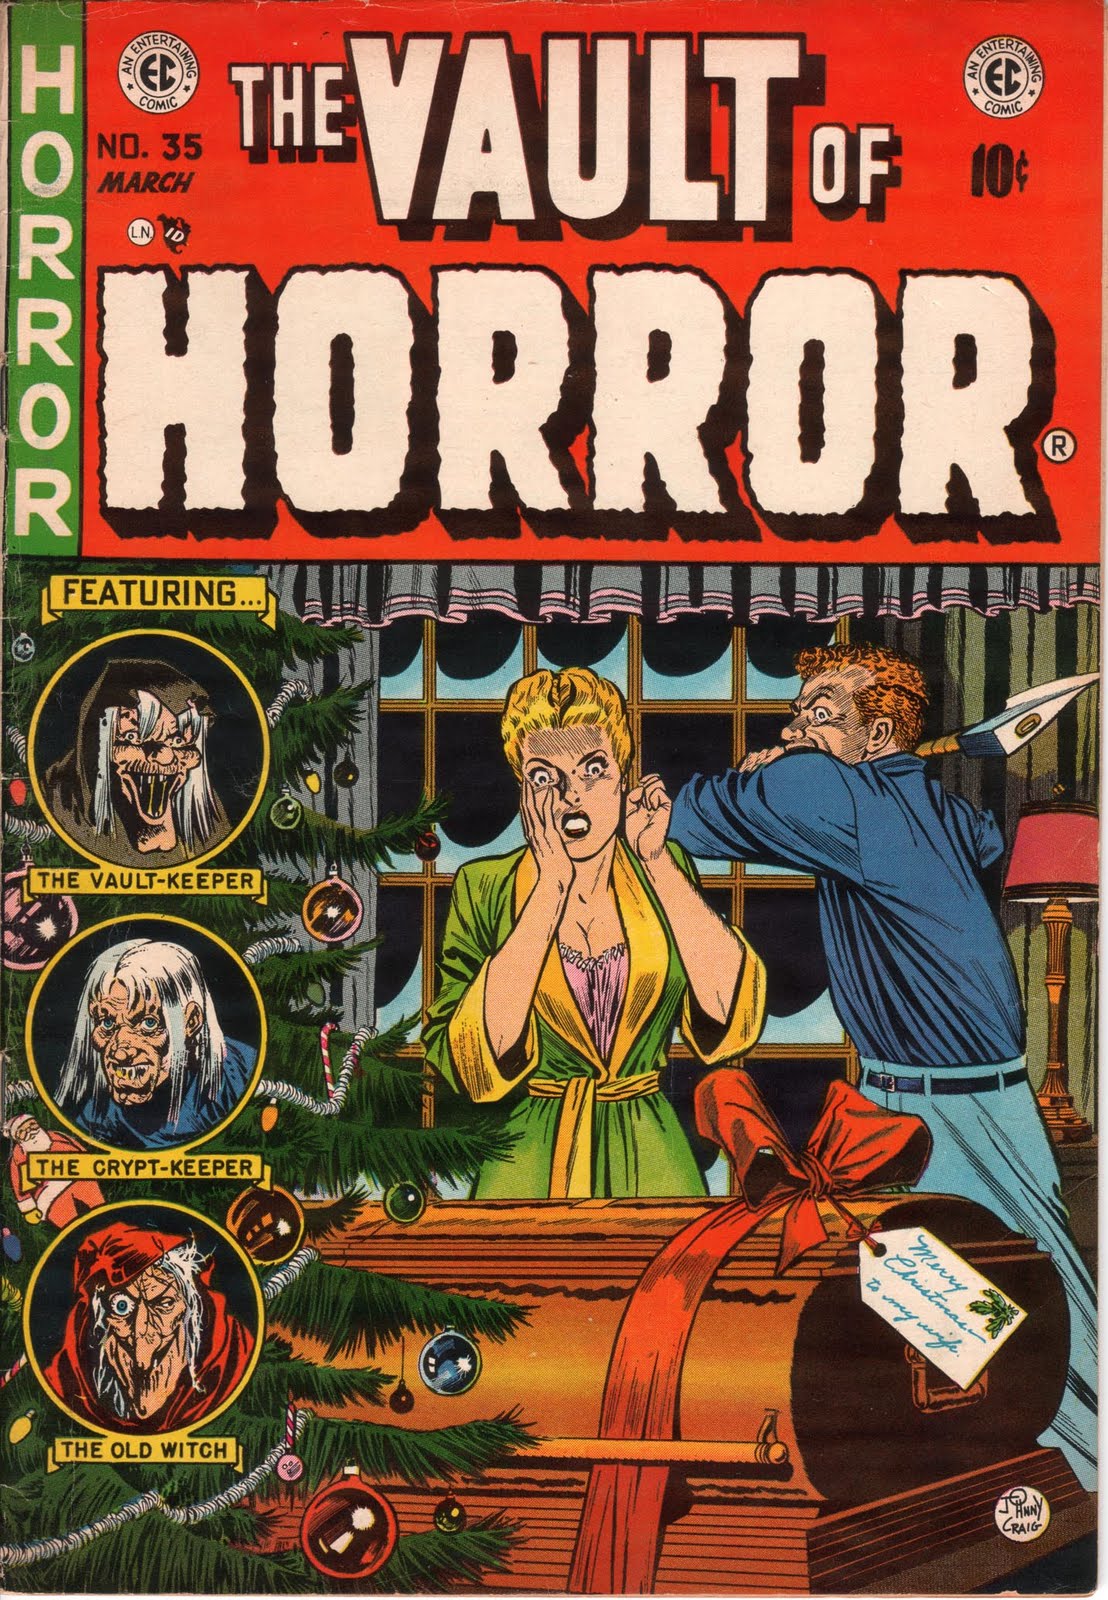 Imaeg of Vault of Horror cover